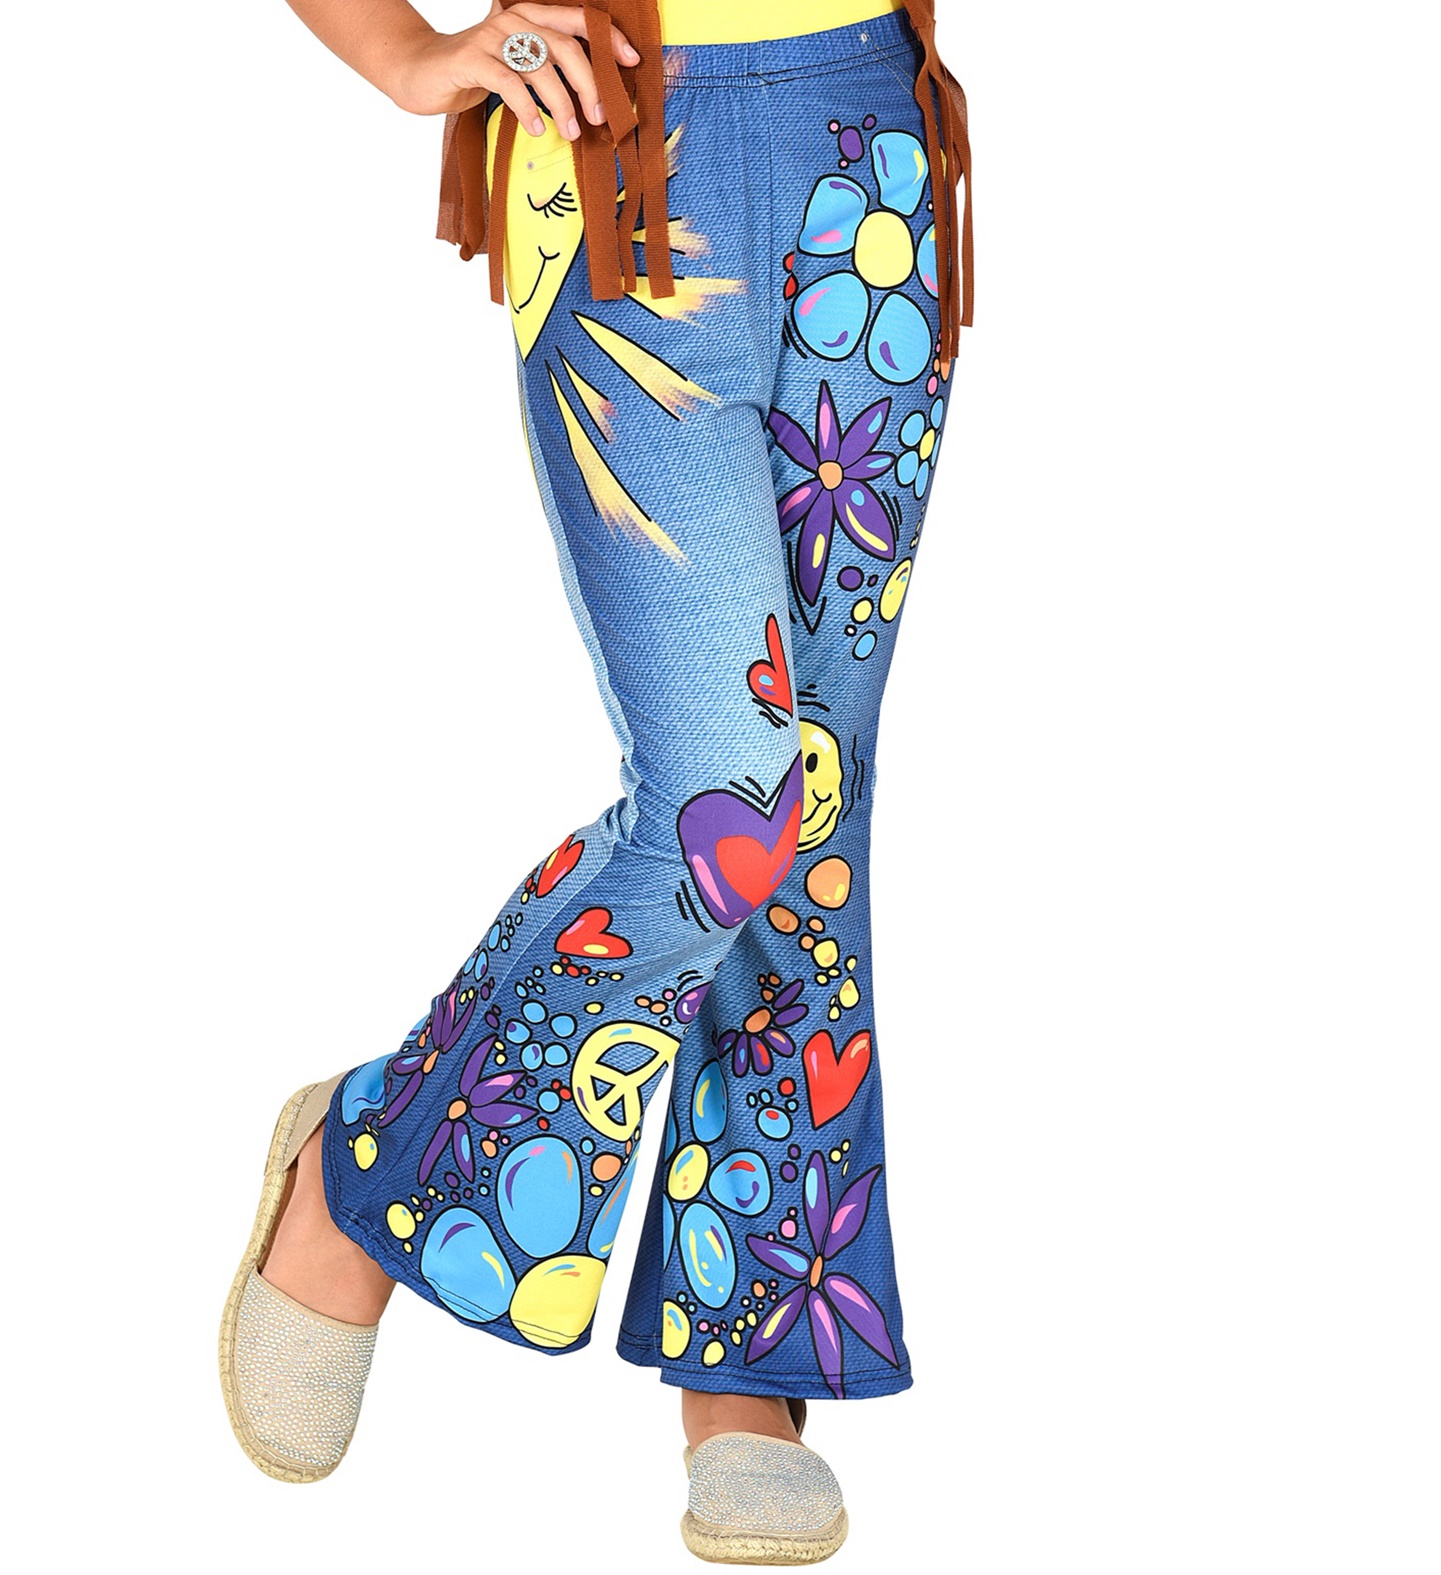 Strumpfhose für Kinder Kinderstrumpfhose Leggins Jeans Hippie Gr. 140 cm / 8-10 Jahre